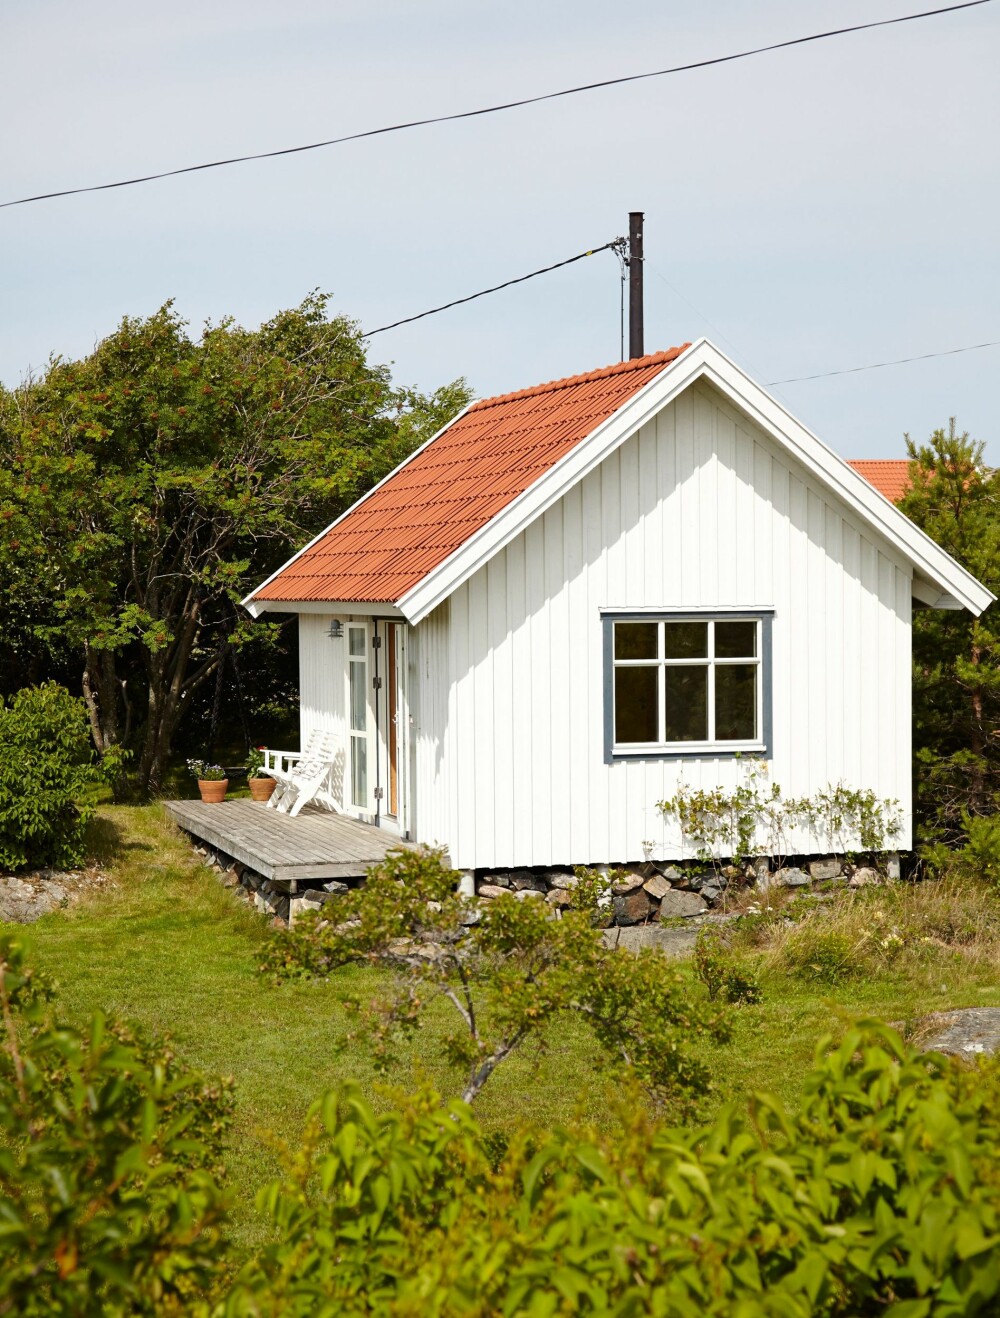 GJESTEHYTTA: Å ha et egen, liten hytte for besøkende er praktisk og gir albuerom for alle. Gjestehytta ble satt opp i 2000, mens hovedhytta er fra 1950.
